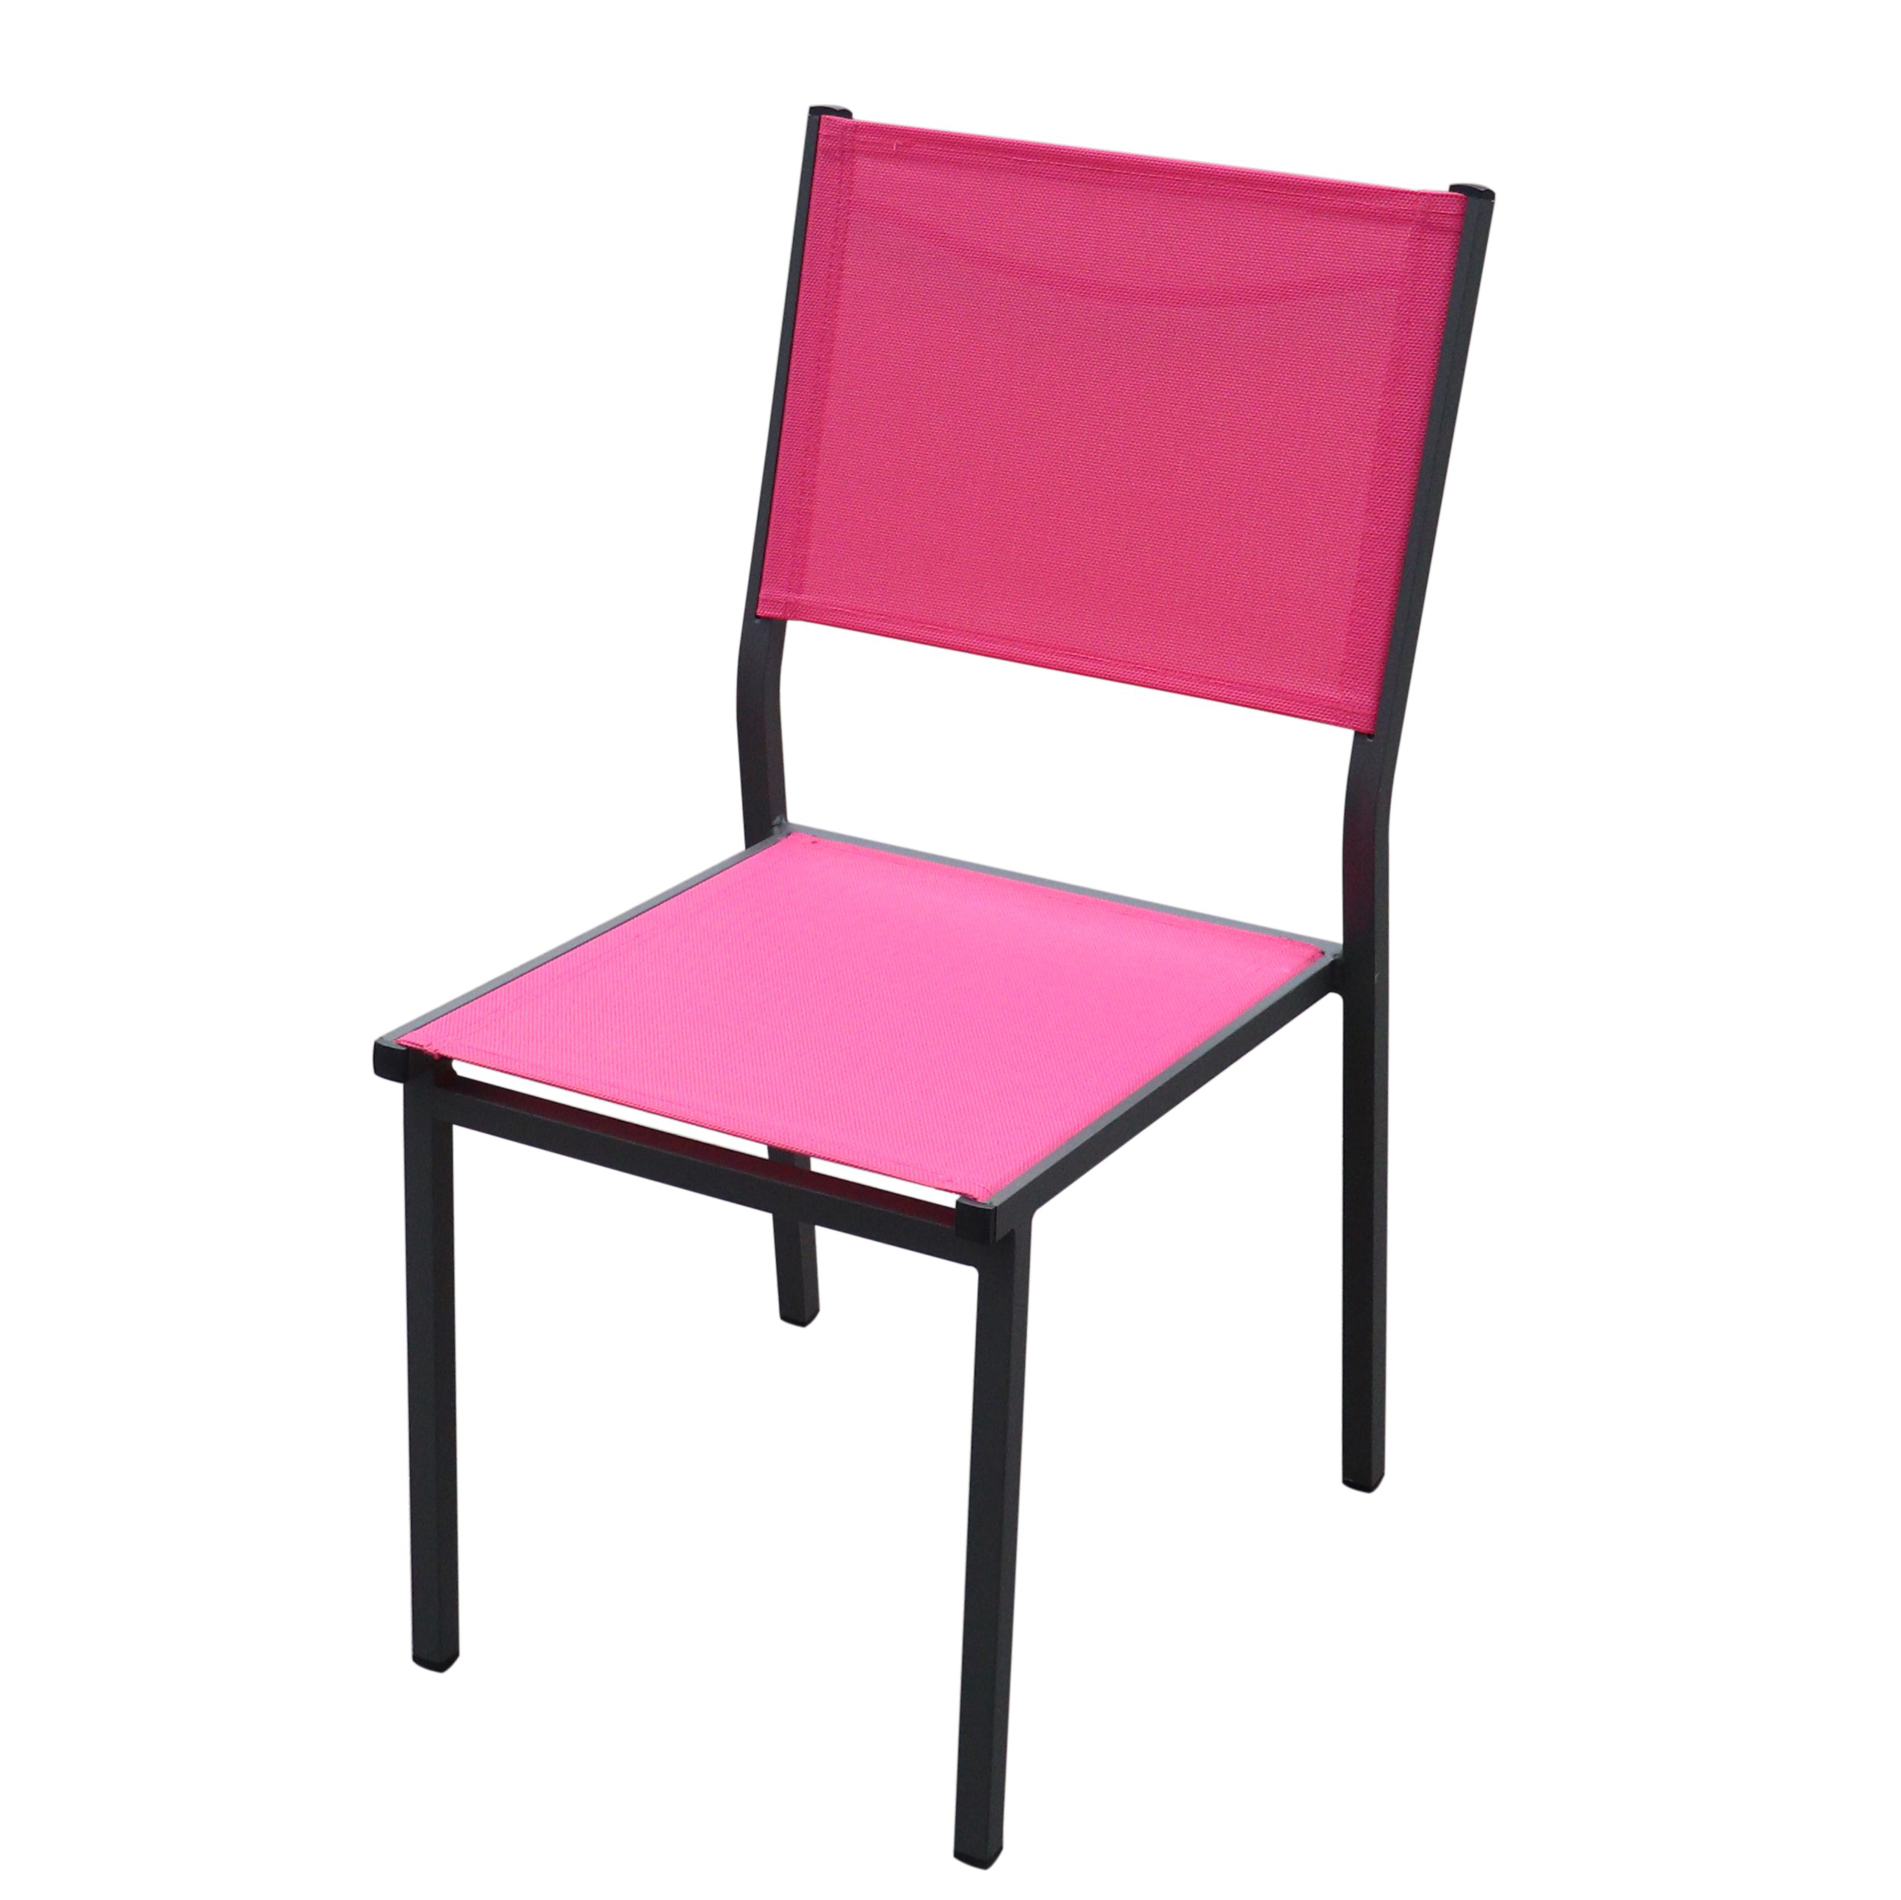 Chaise de jardin alu empilable Murano  Gris anthracite/Rose  Salon de